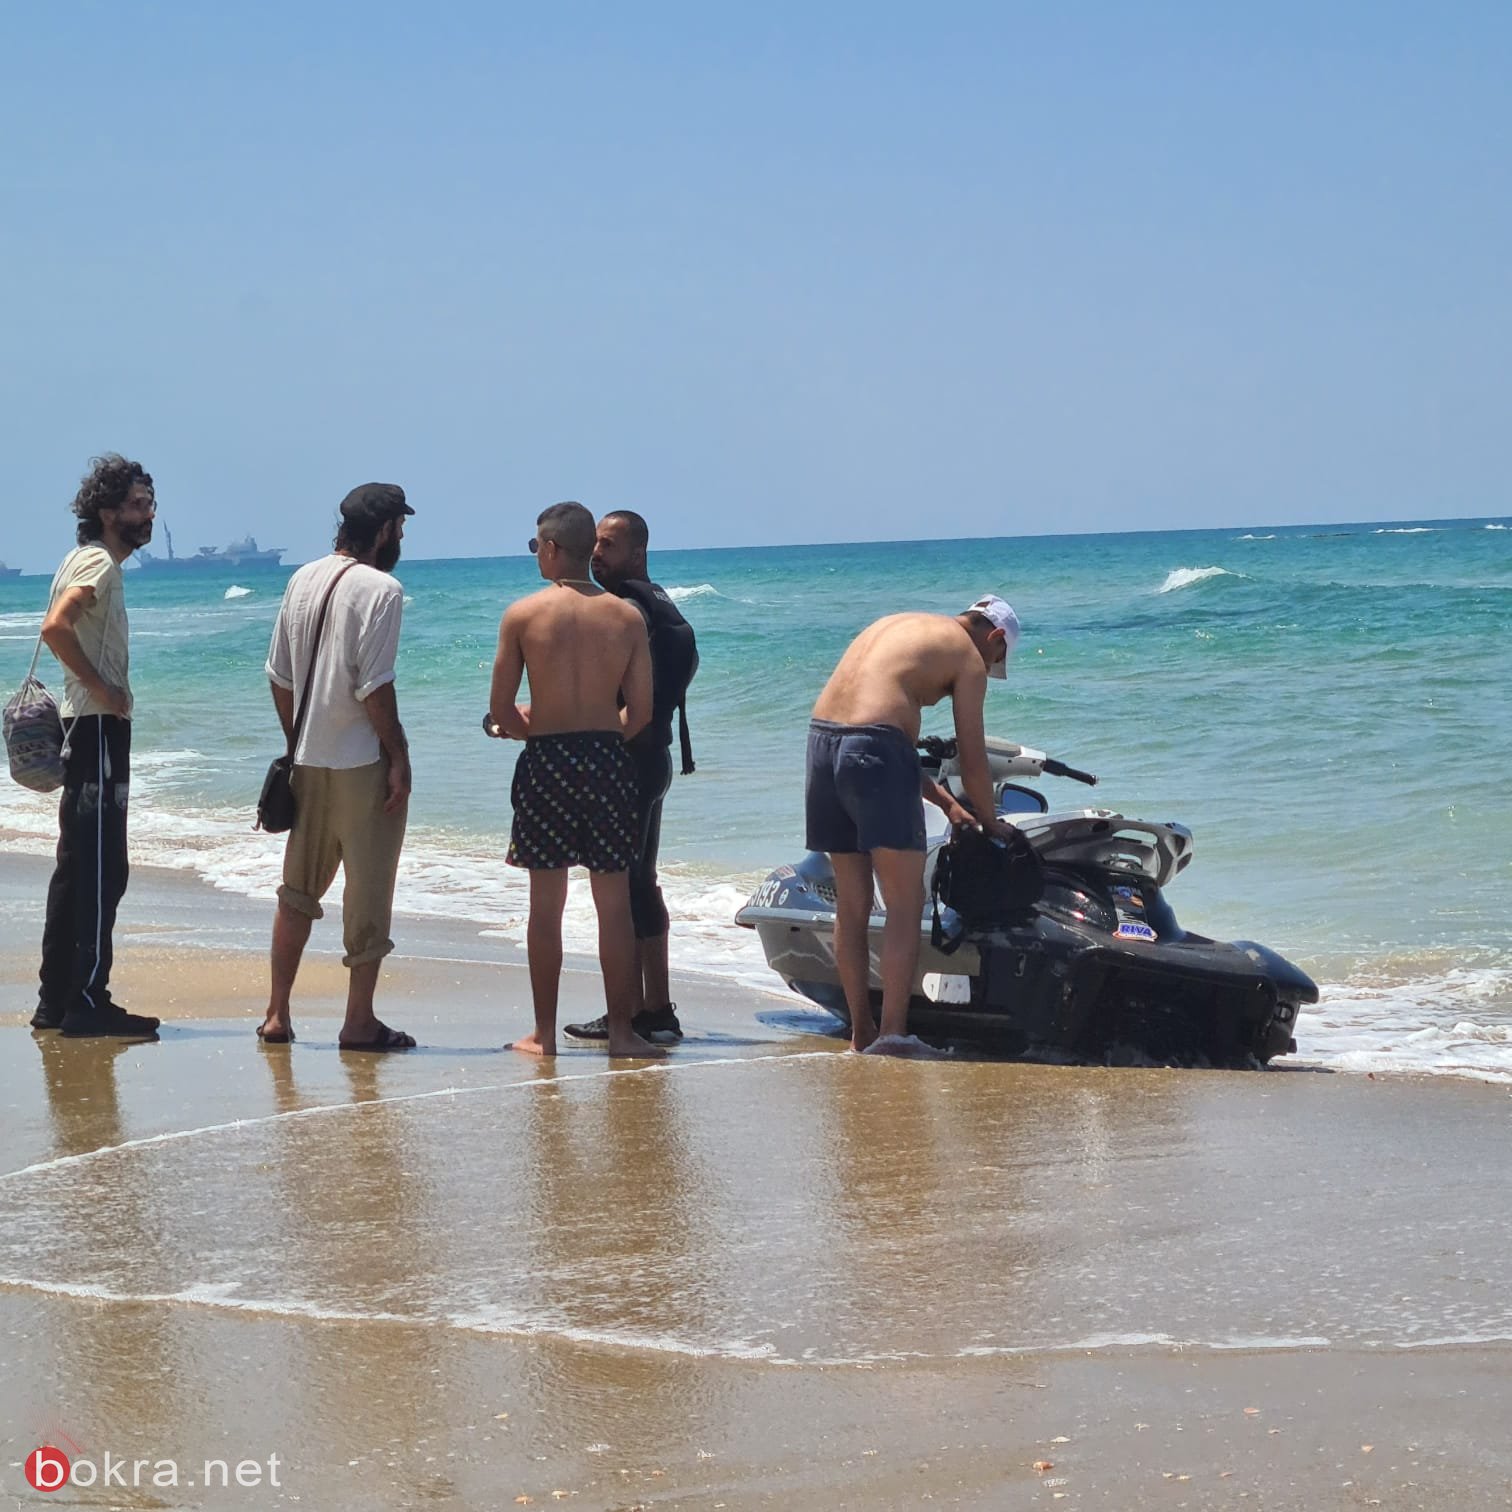 د. أمين صفيّة: عمليات البحث مستمرة من شاطئ عتليت حتى الفريديس للعثور على أيمن-1